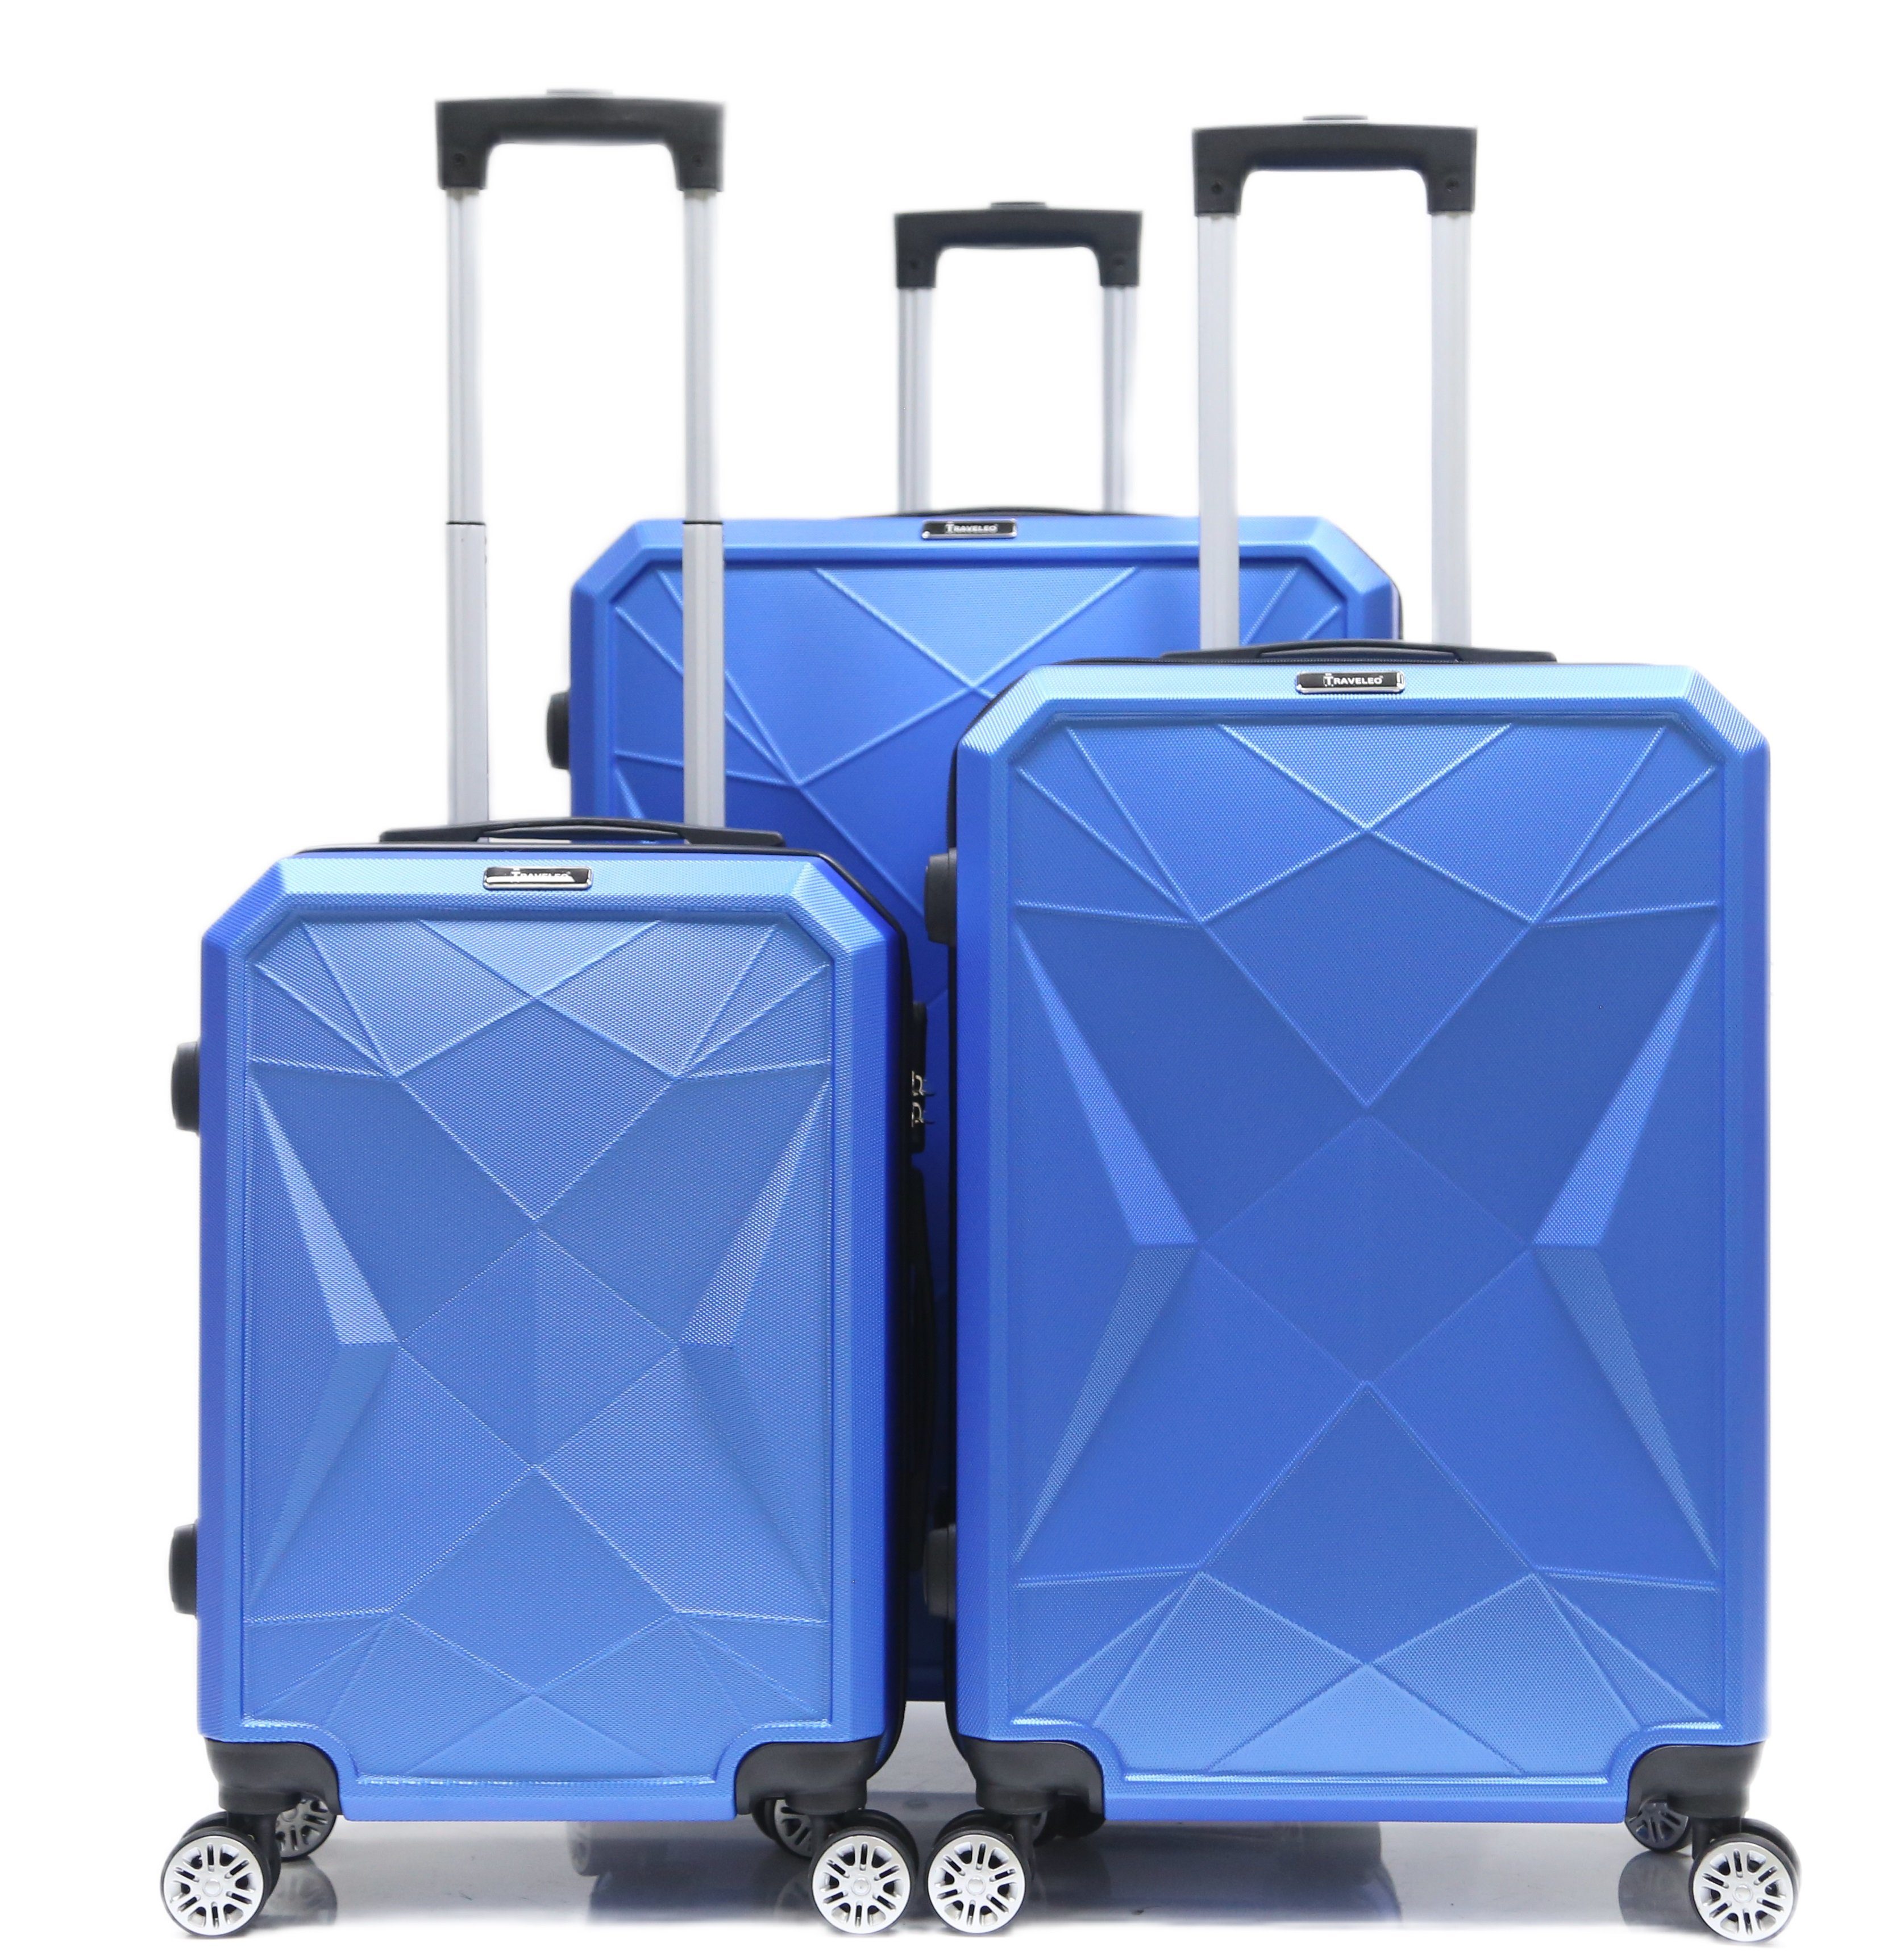 Cheffinger Kofferset Reisekoffer ABS-03 Koffer 3-teilig Hartschale Trolley Set Kofferset, 4 Rollen, (3 tlg) Blau